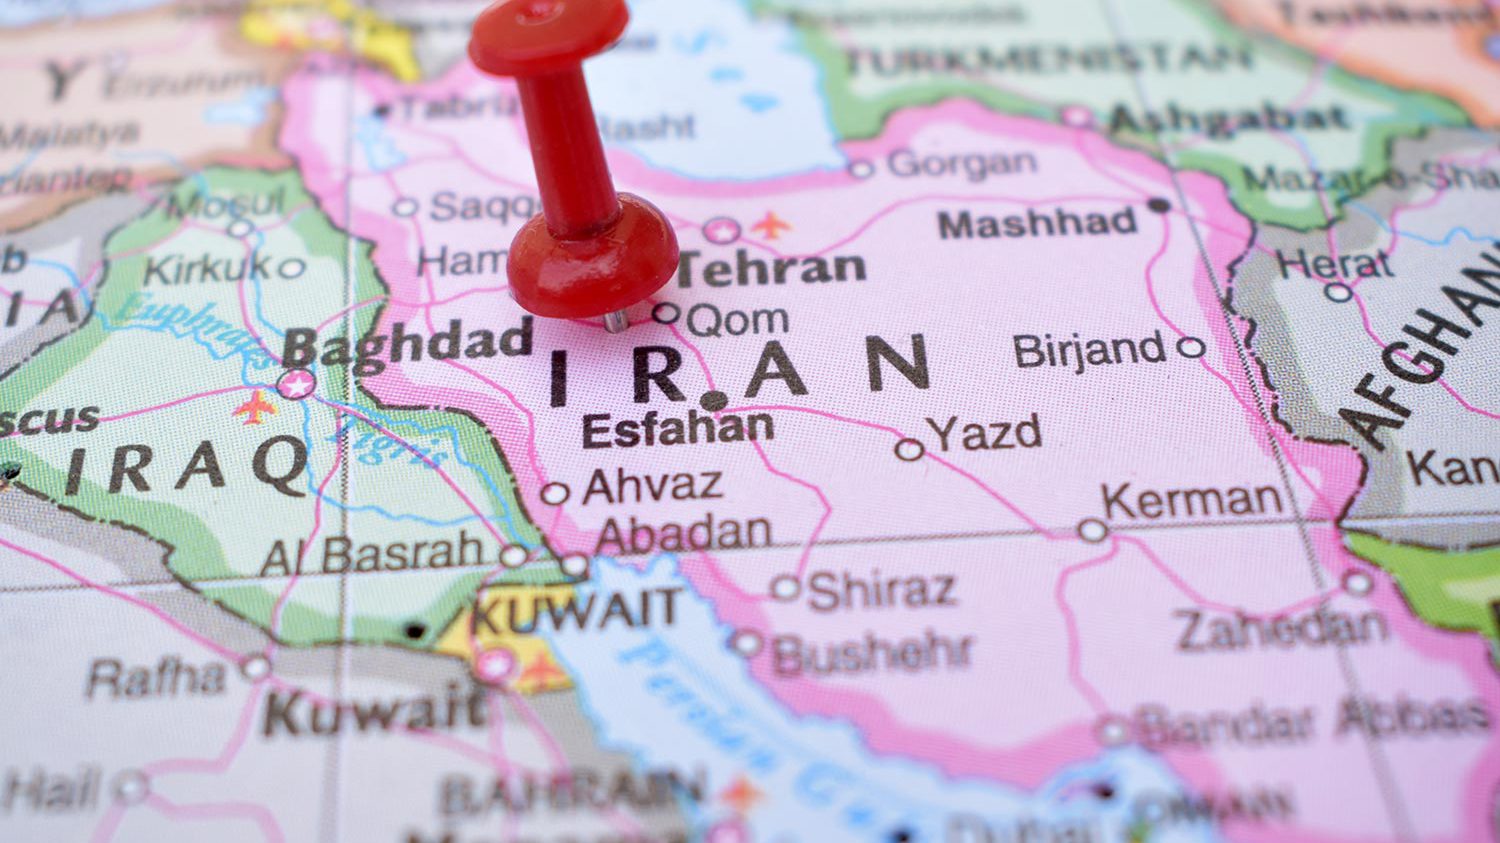 پونز قرمز در نقشه ایران با جزئیات